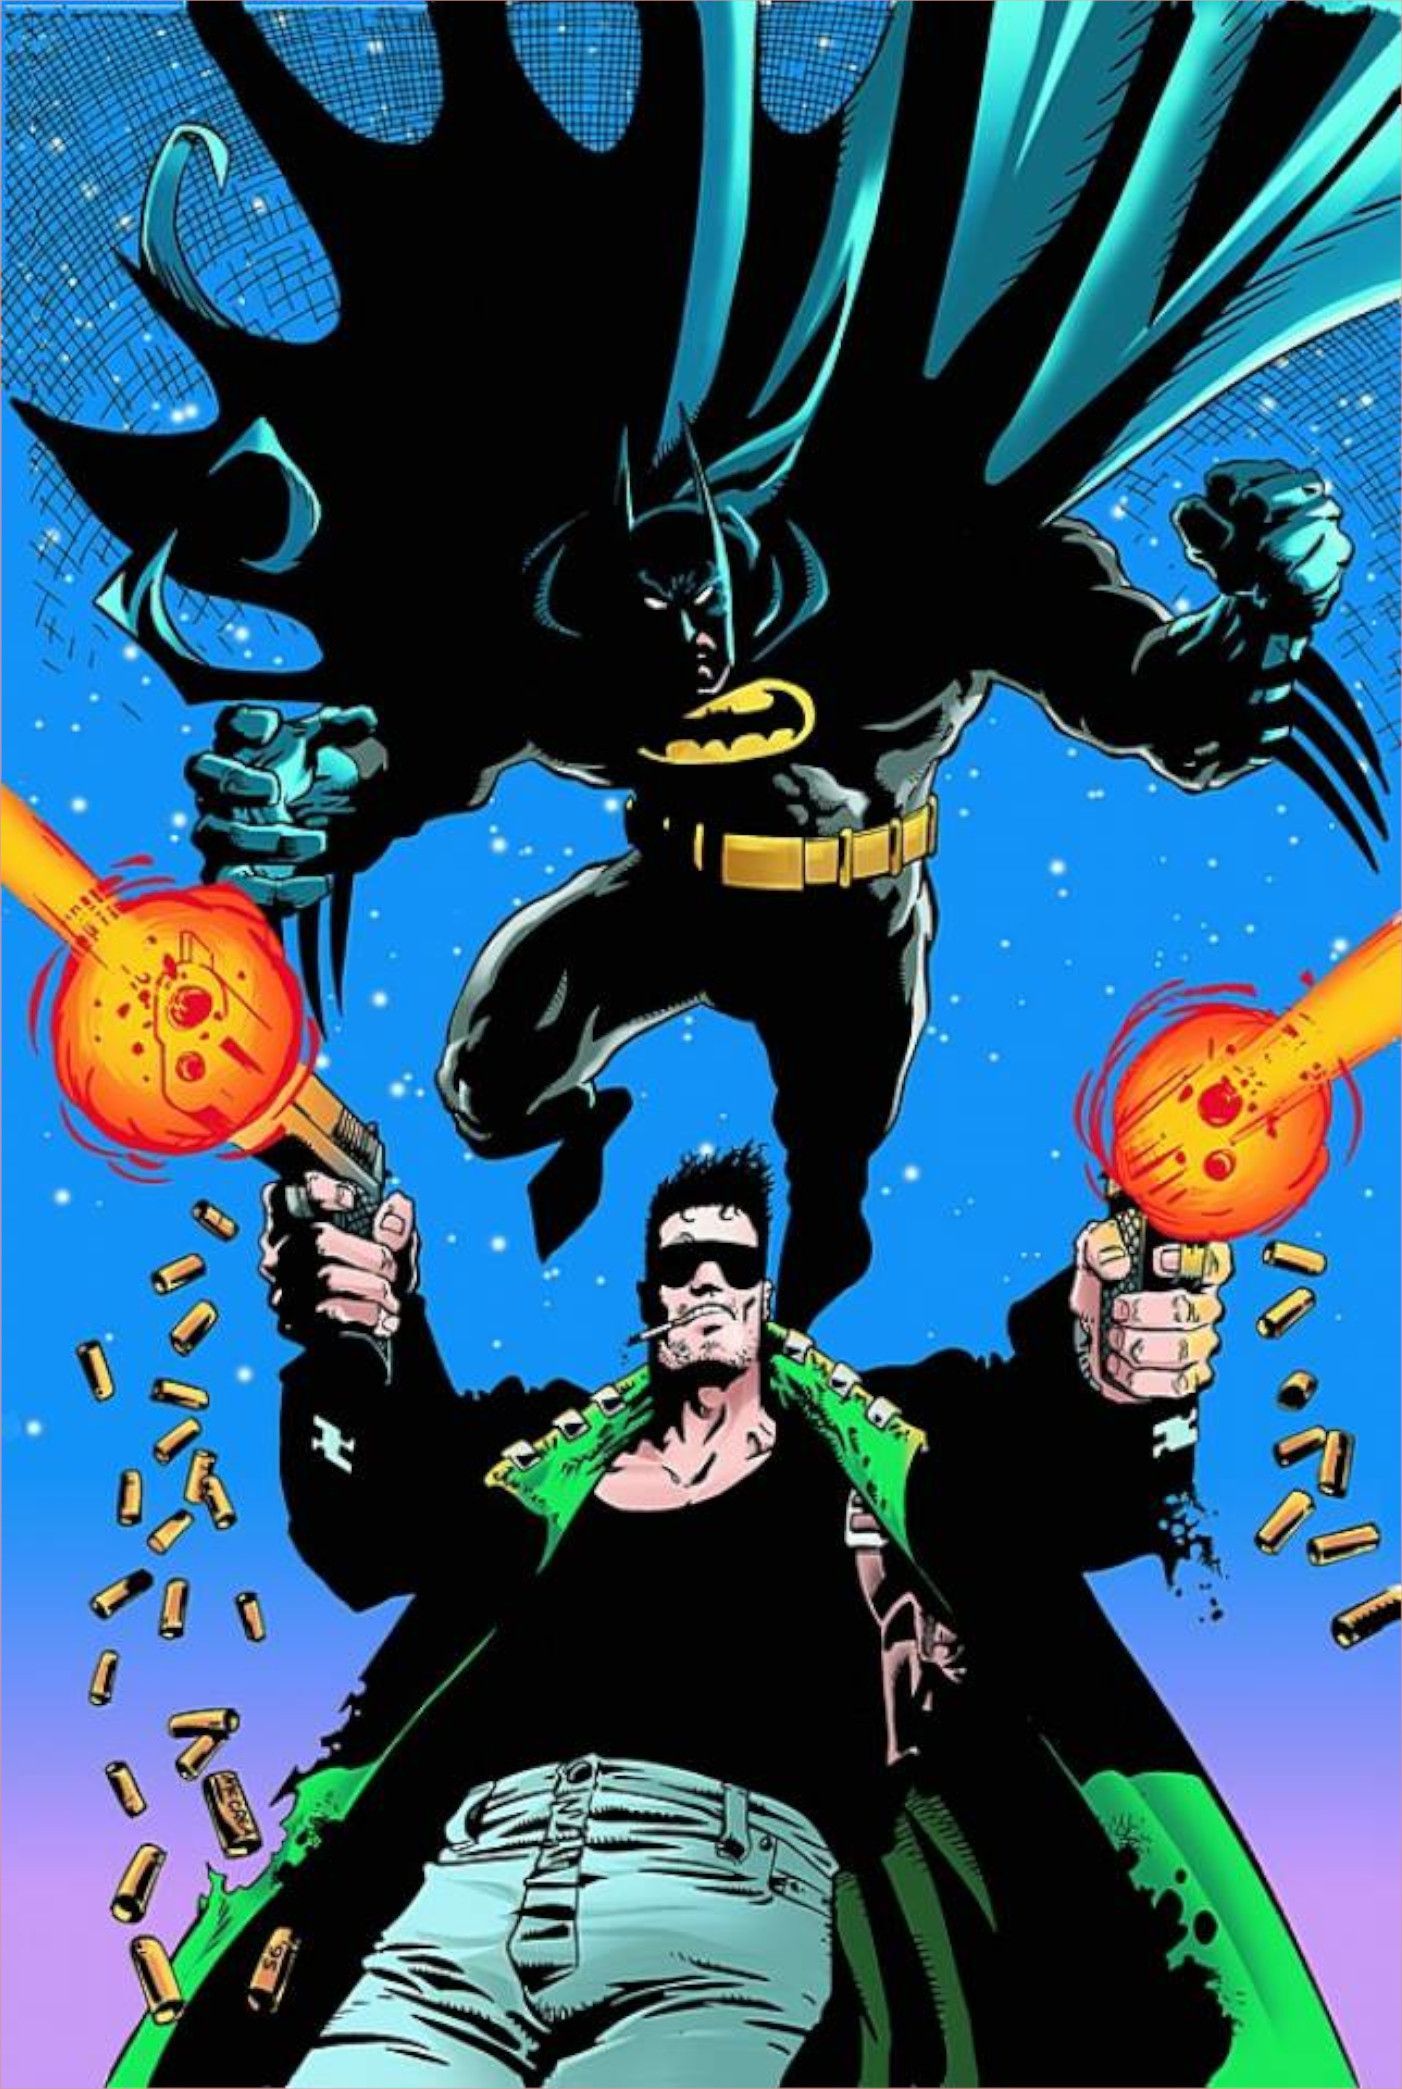 Couverture Hitman #1 avec Batman